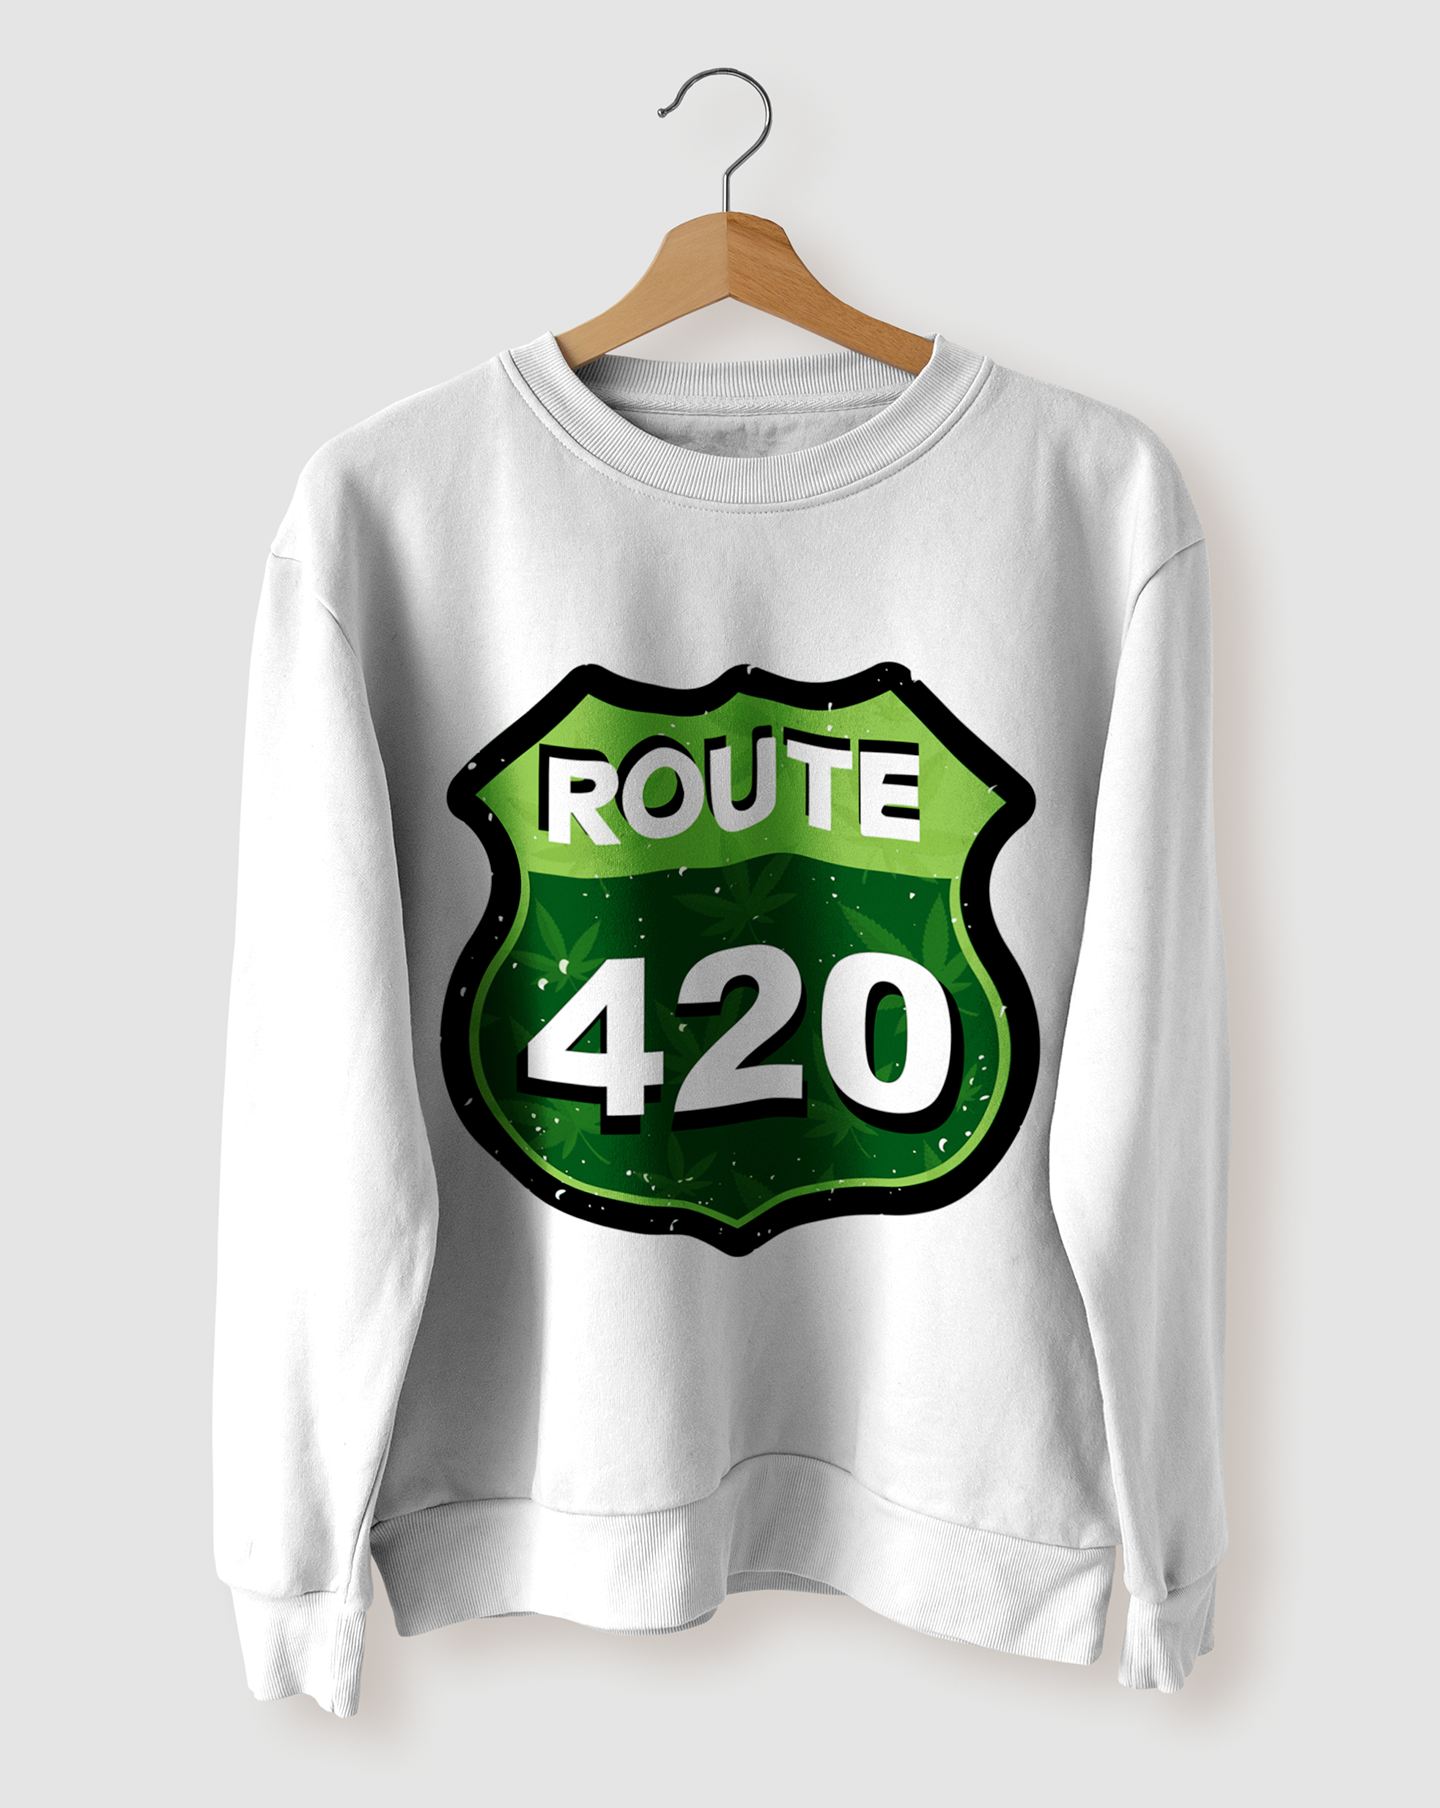 
                  
                    ROUTE 420 <br> sweatshirt <br><br>
                  
                